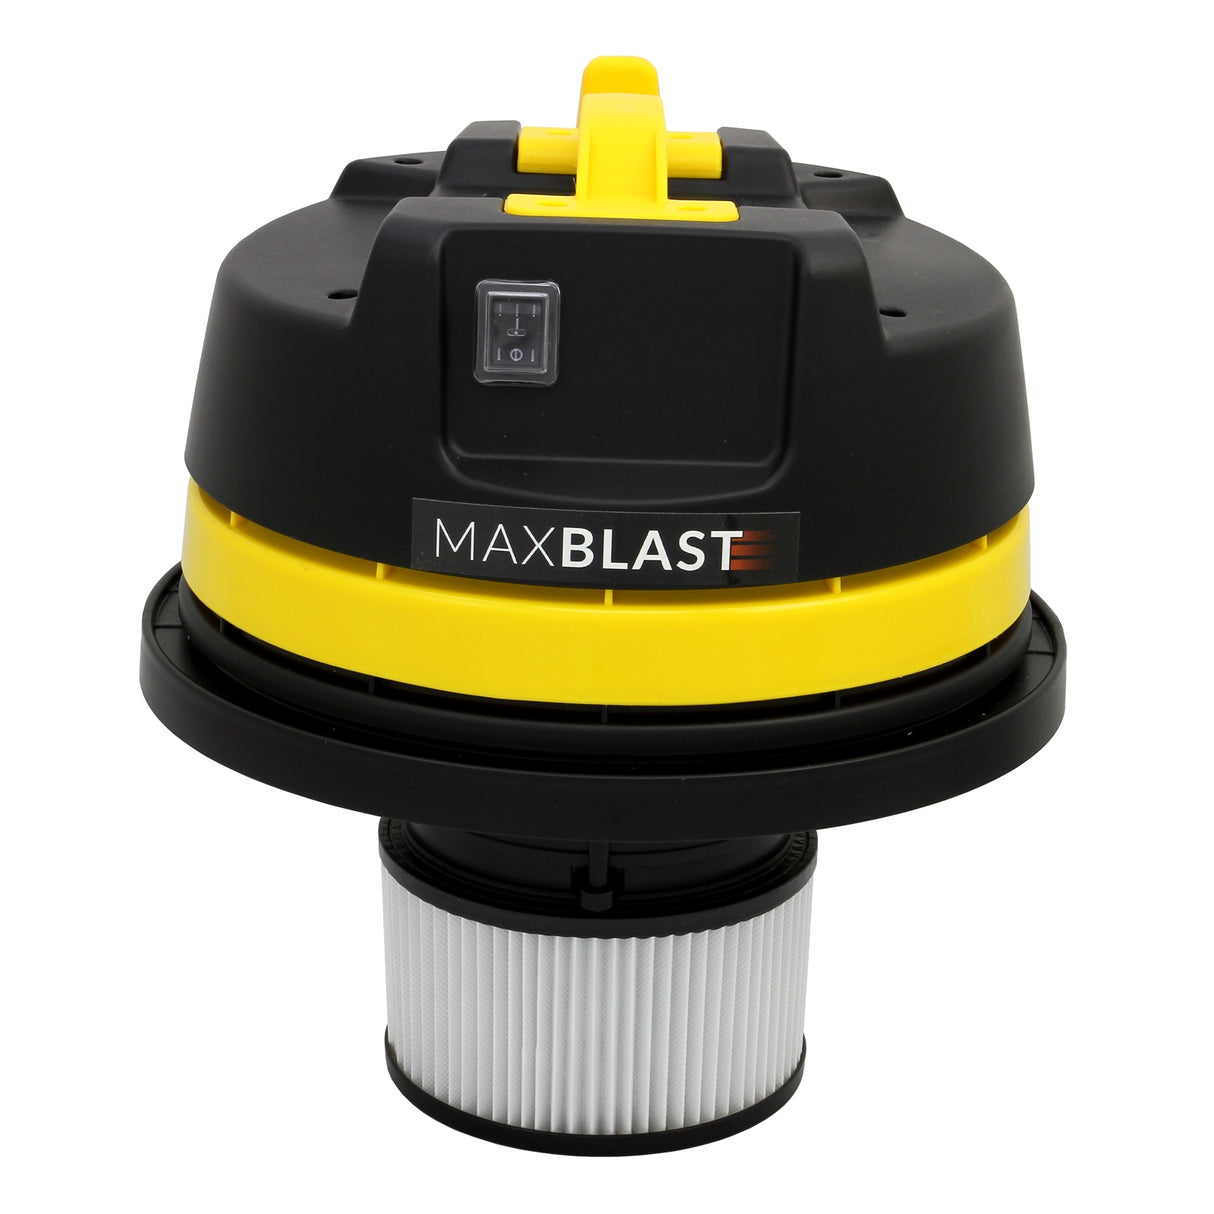 MAXBLAST 60L Industrial Vacuum Cleaner